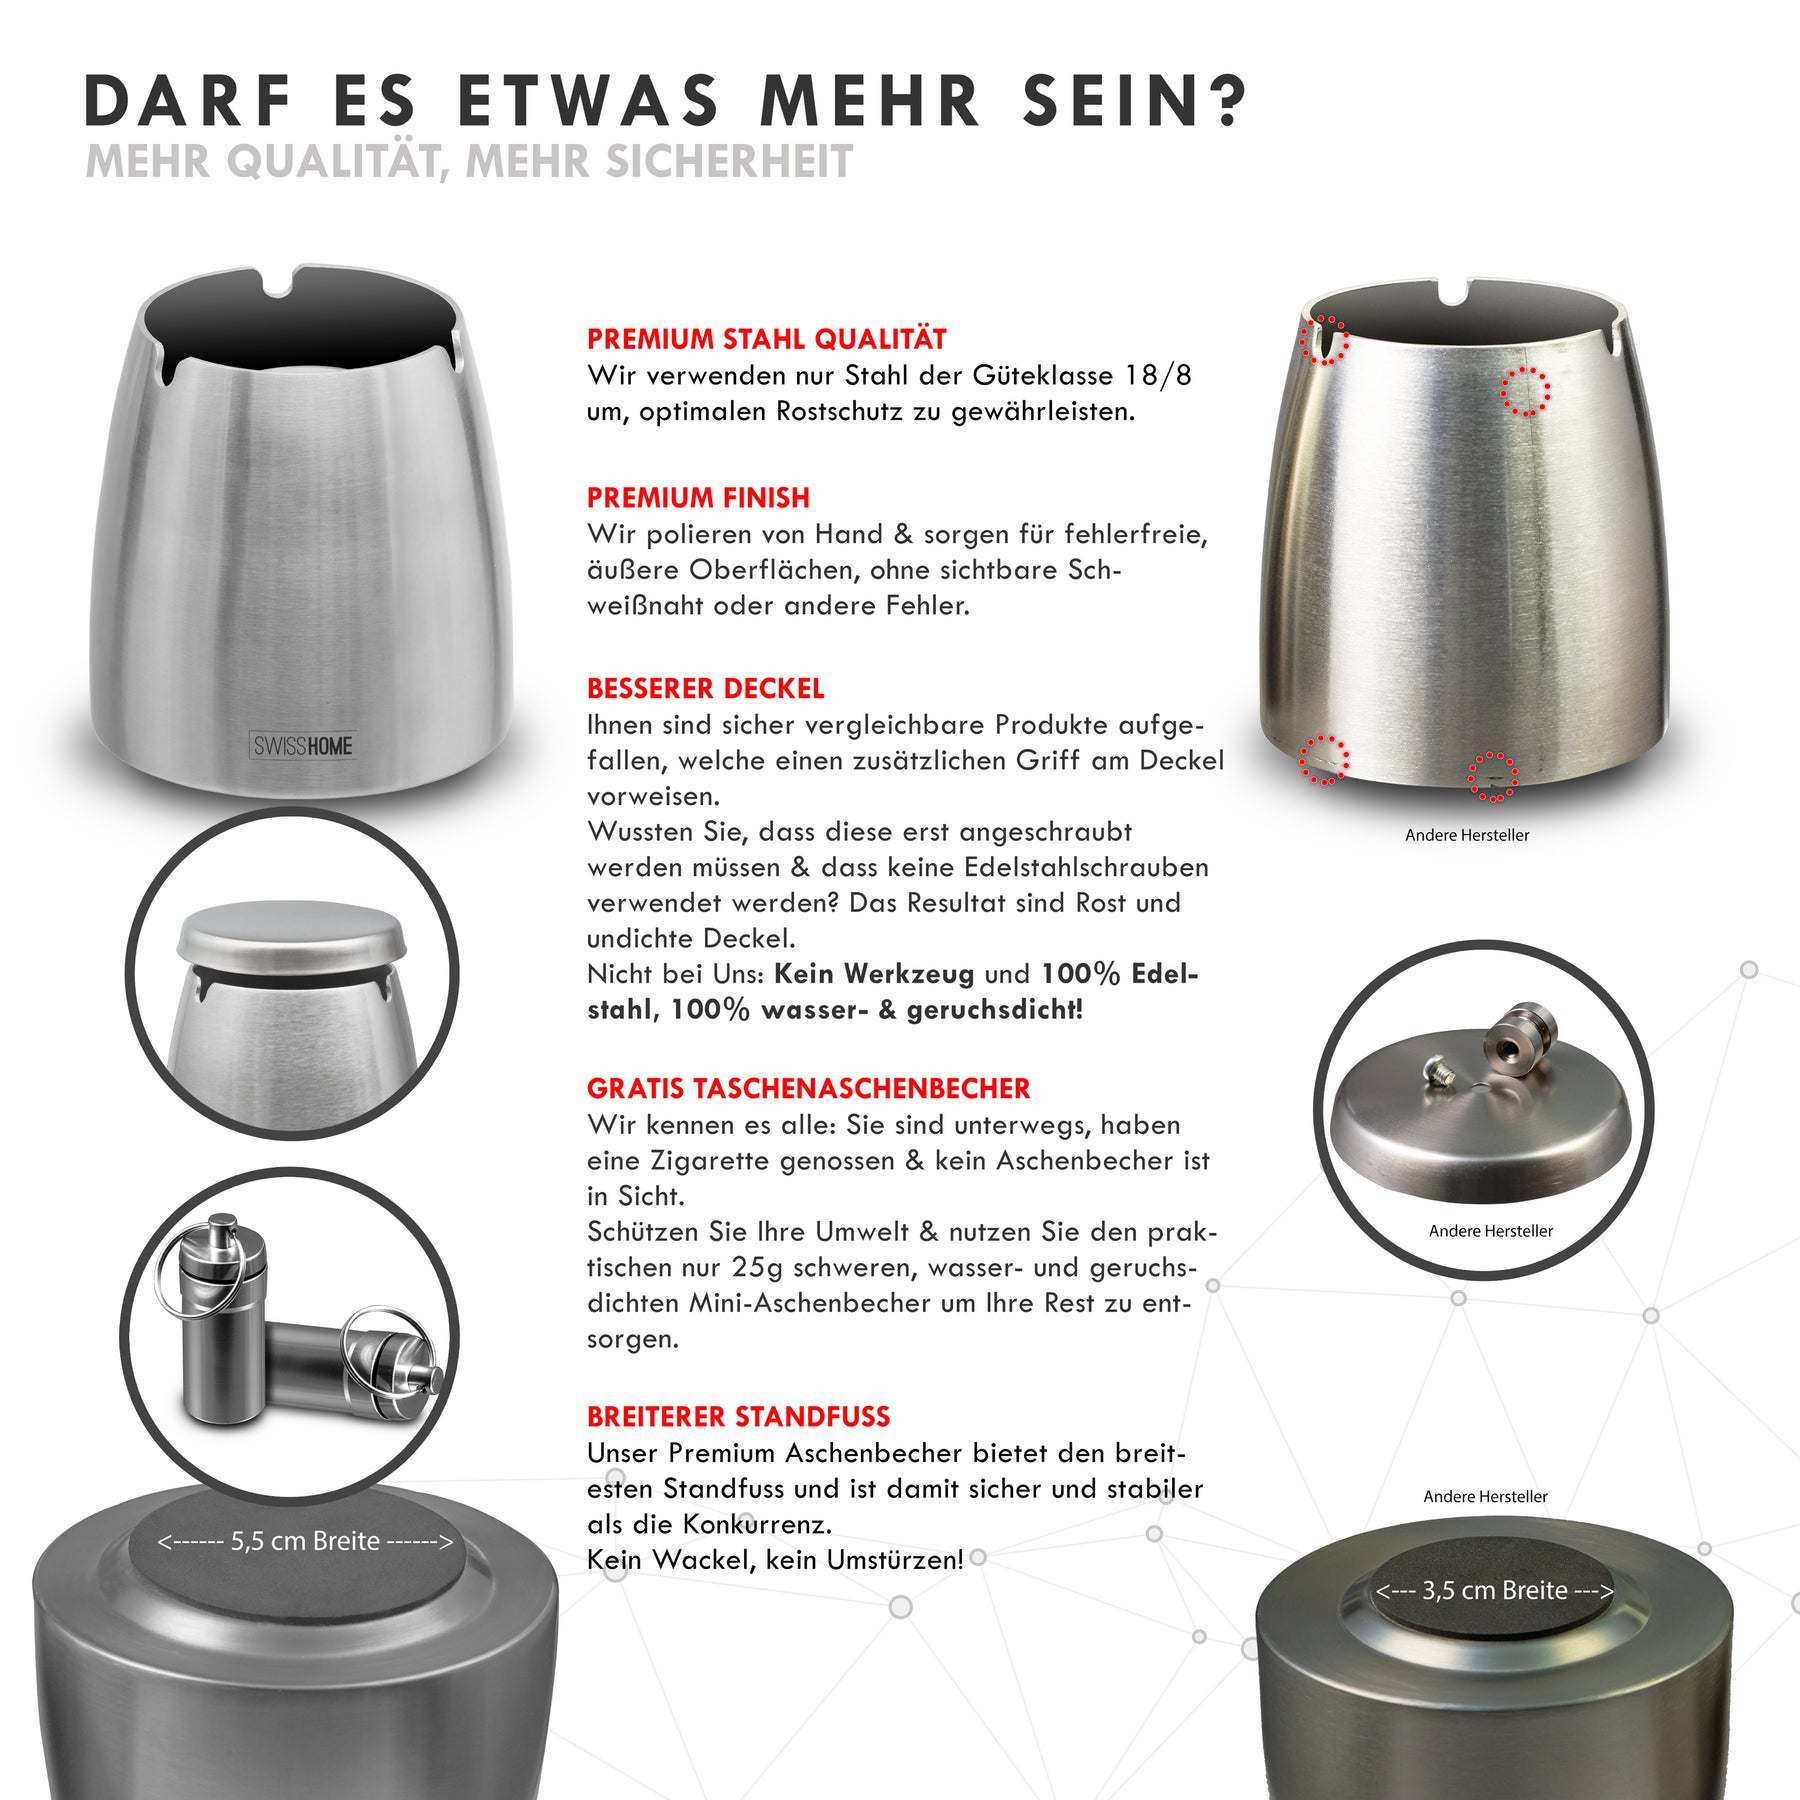 Swisshome - Der Geruchsdichte Aschenbecher mit Deckel Fr Drinnen und Drauen  